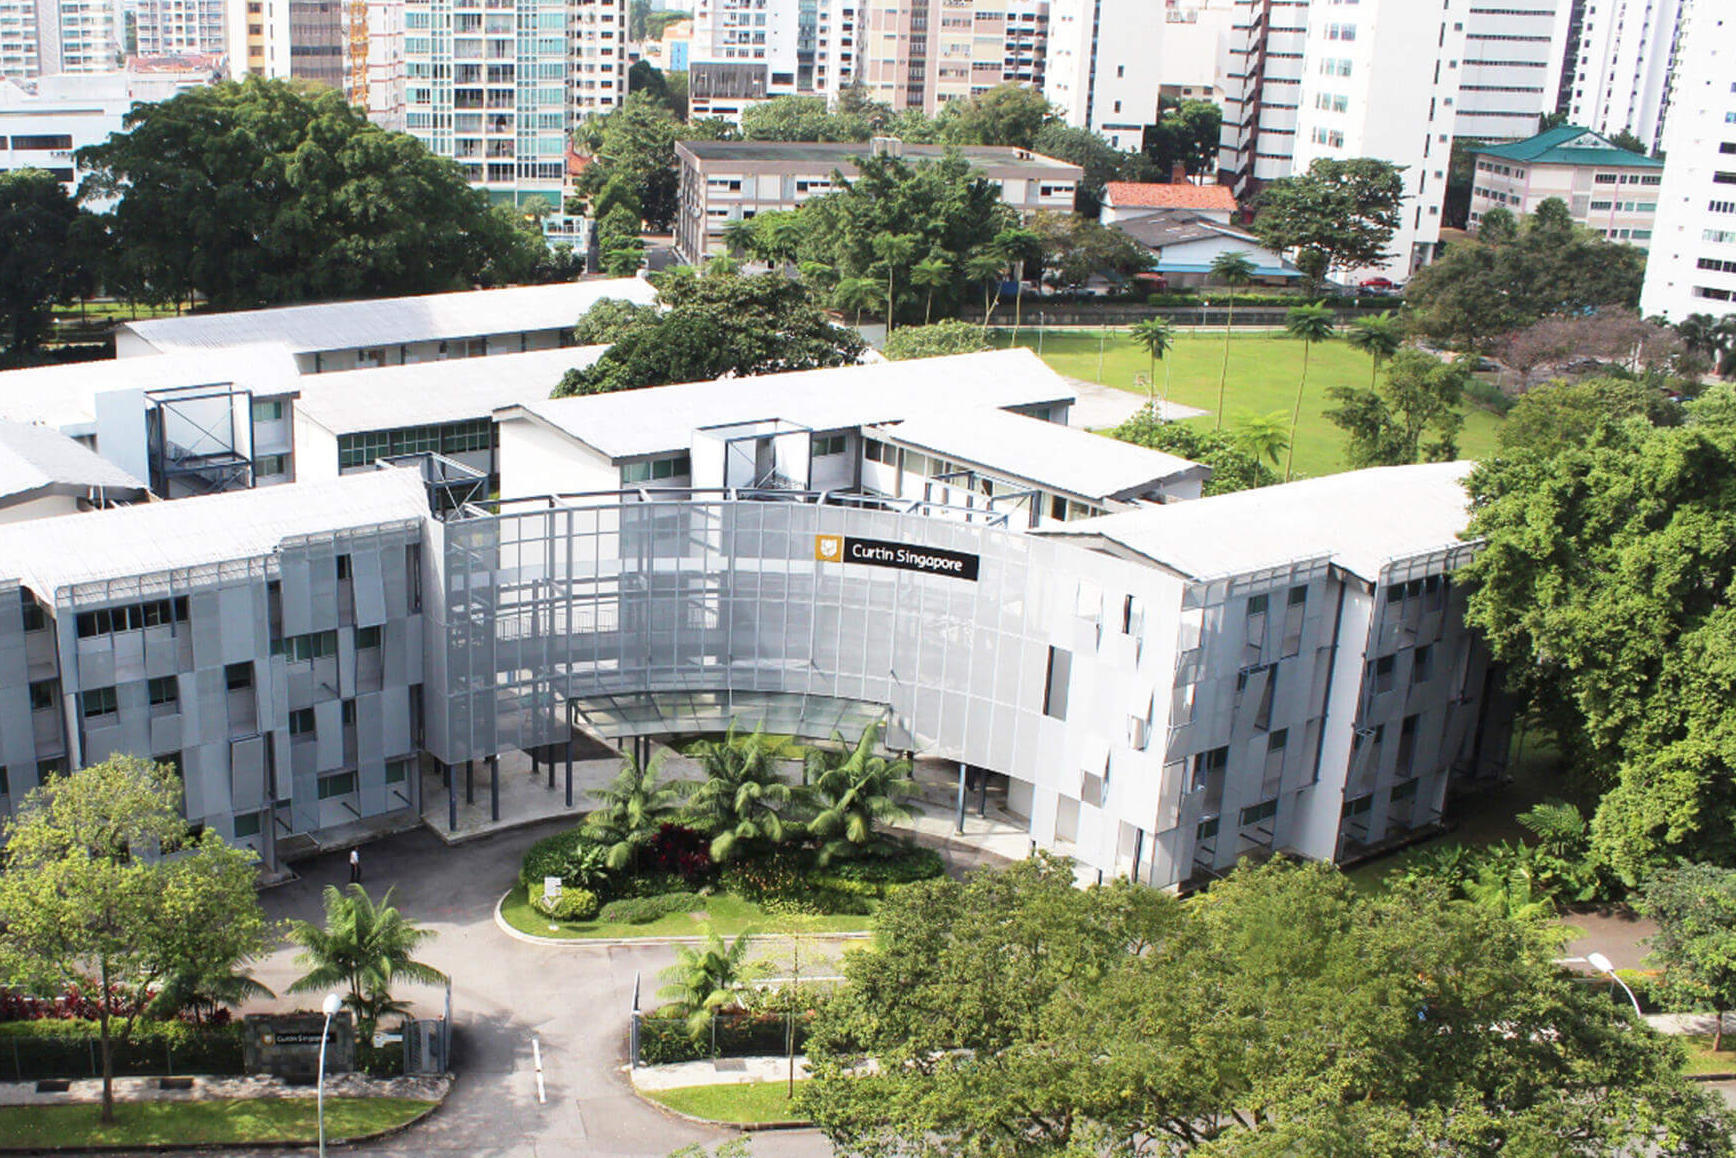 Studiere an der Curtin University in Singapur